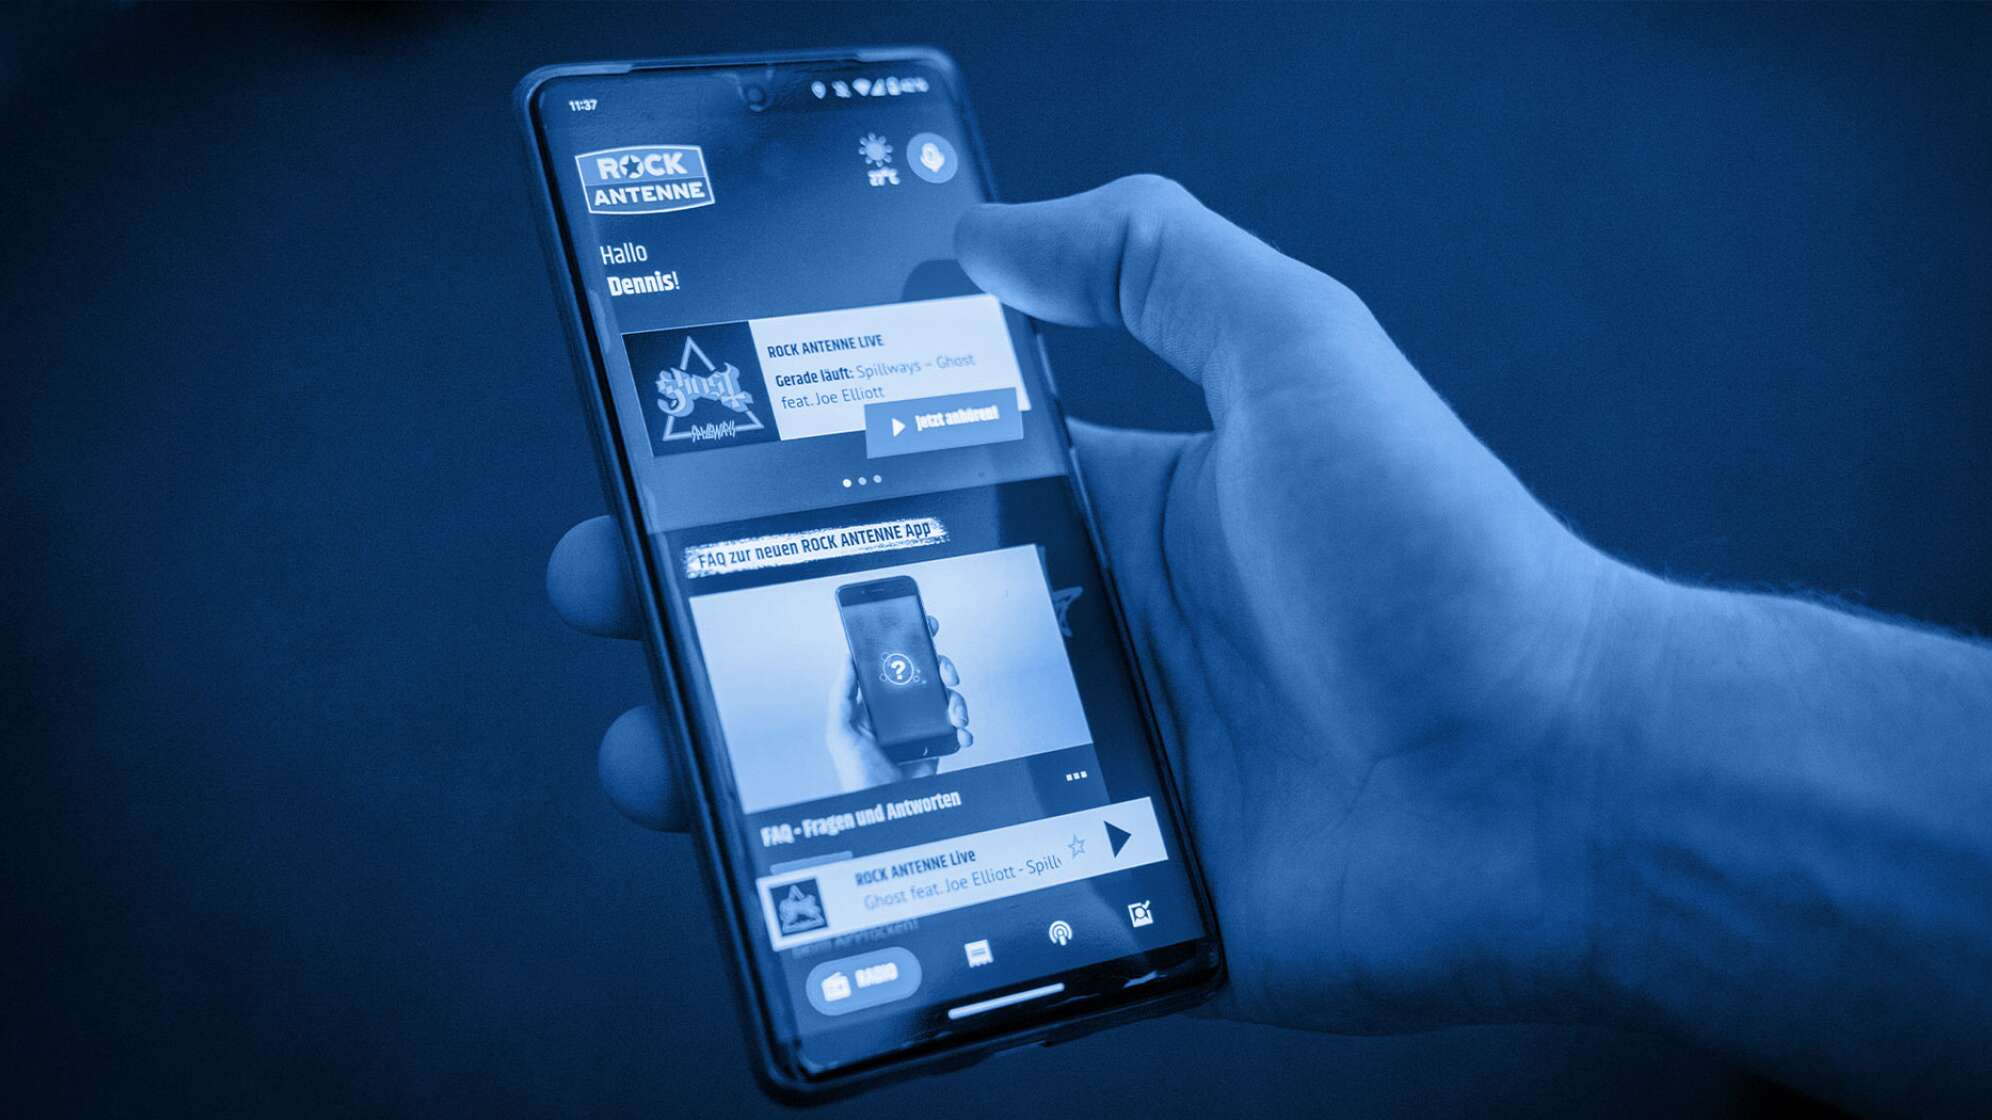 Eine Hand mit Smartphone, auf dem Screen zu sehen ist die neue ROCK ANTENNE App